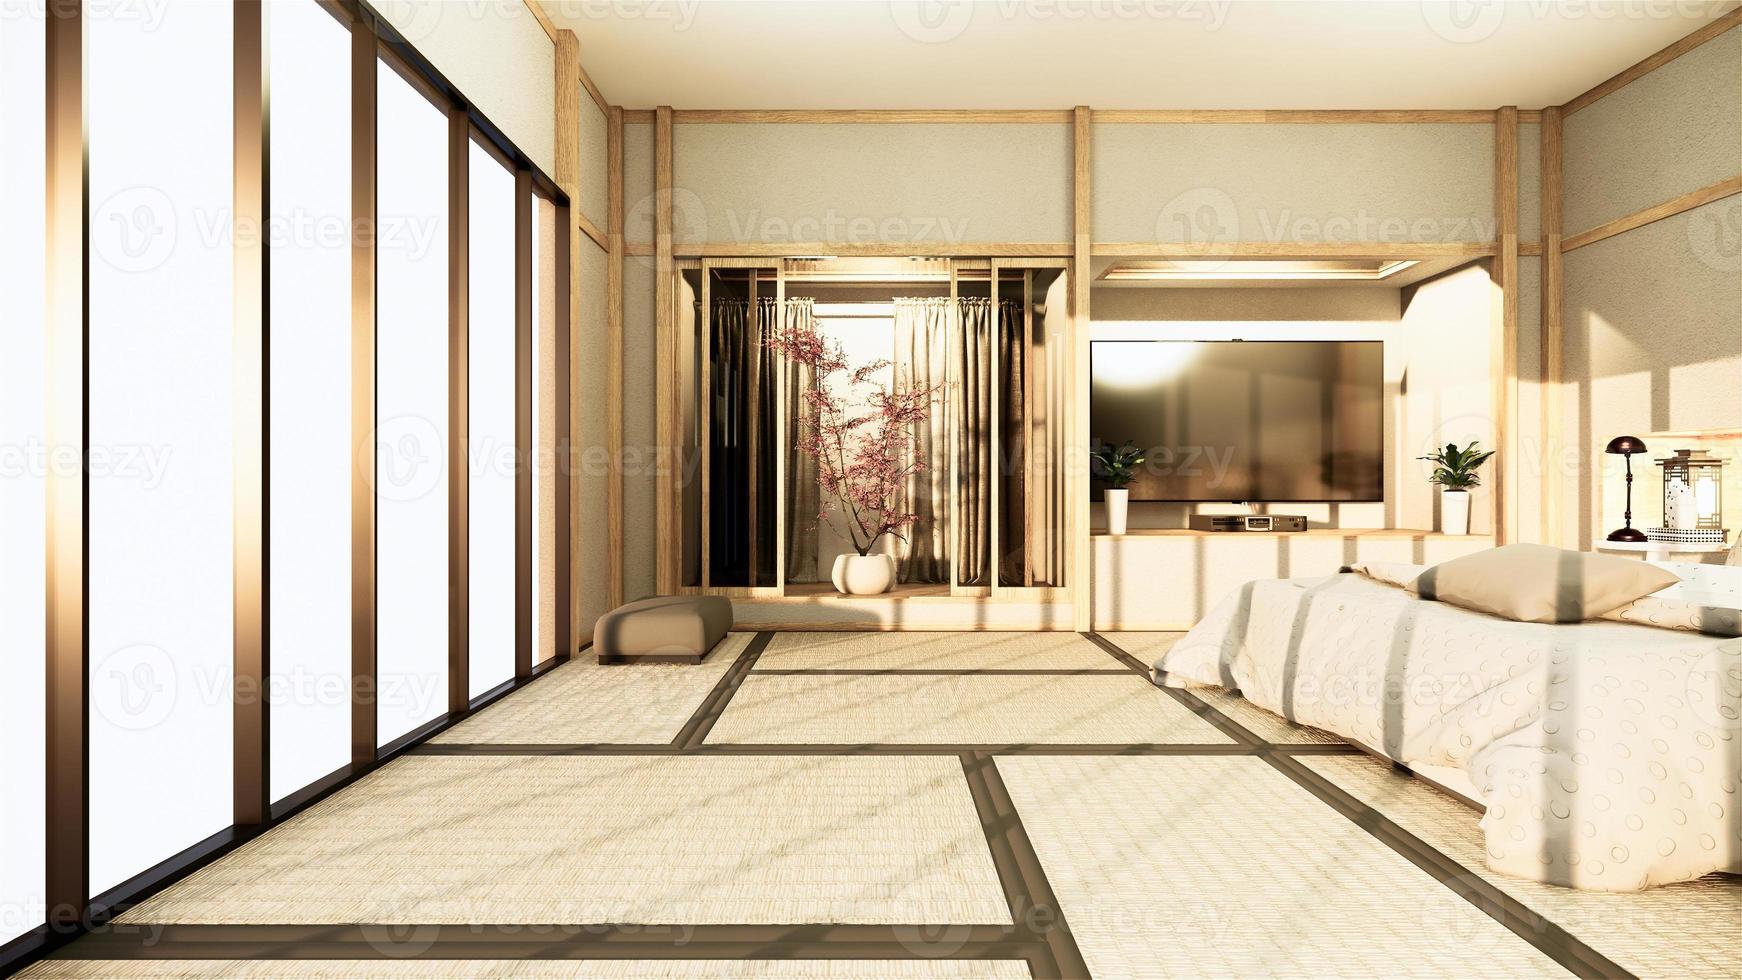 moderne zen rustige slaapkamer. Japanse stijl slaapkamer met plank muur ontwerp verborgen licht en decoratie nihon style.3d rendering foto